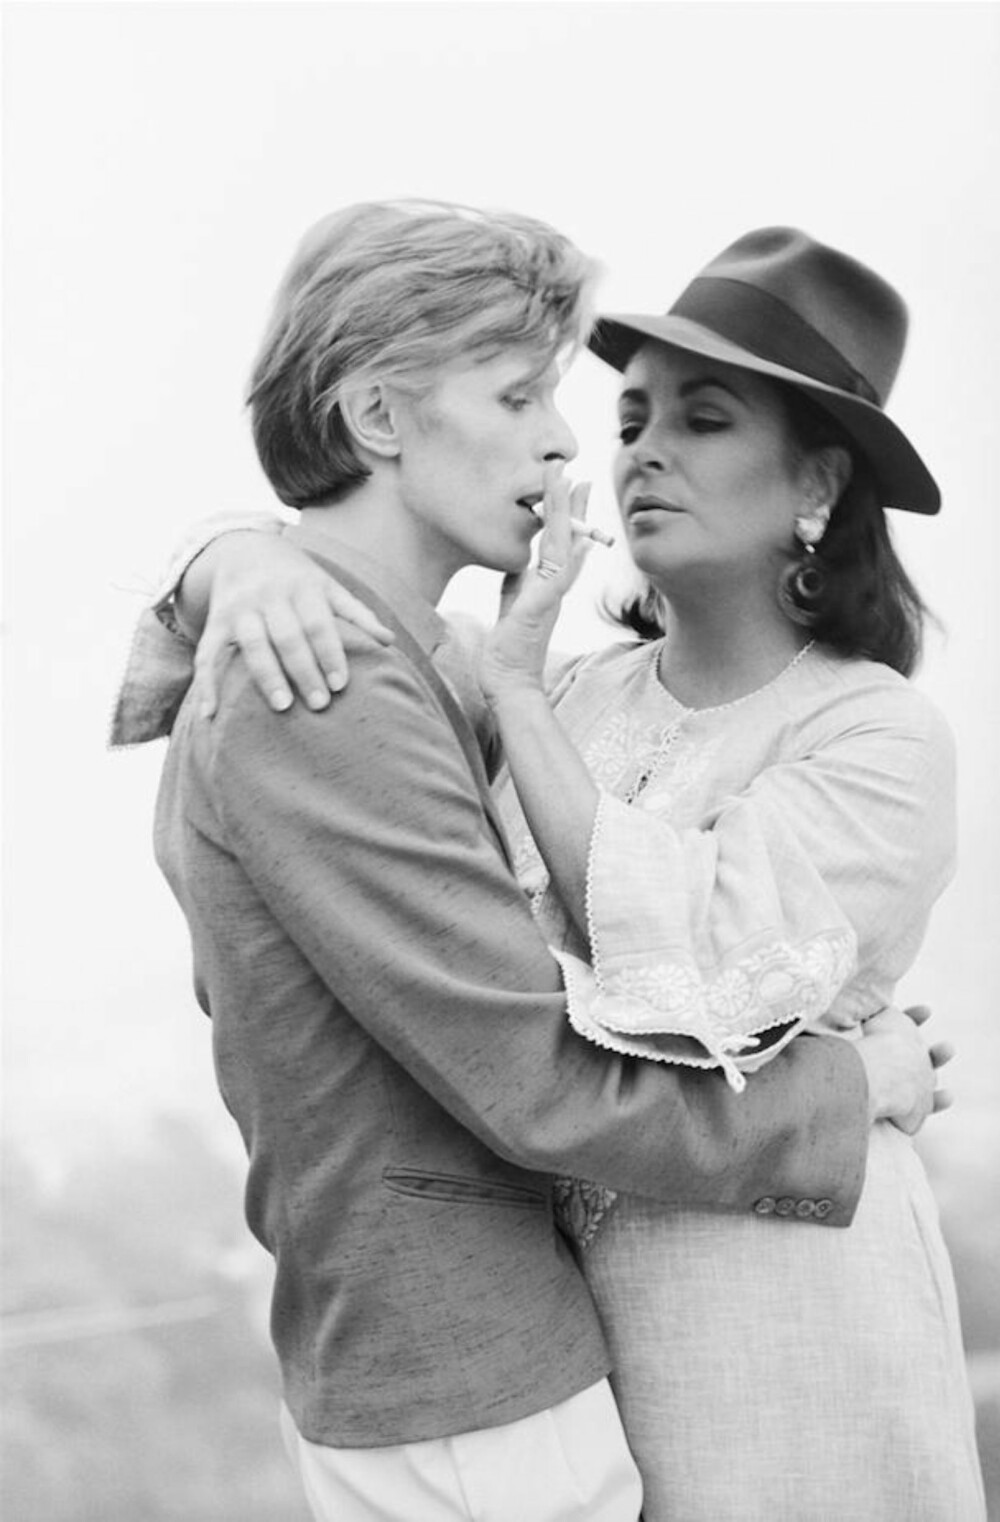 Ikke en helt opplagt sammensetning. Men gjennom Terry fikk Elizabeth Taylor møte David Bowie. Møtet ble foreviget av den Norges-aktuelle fotografen i 1975. Pris for bildet er 19.500 kroner. 